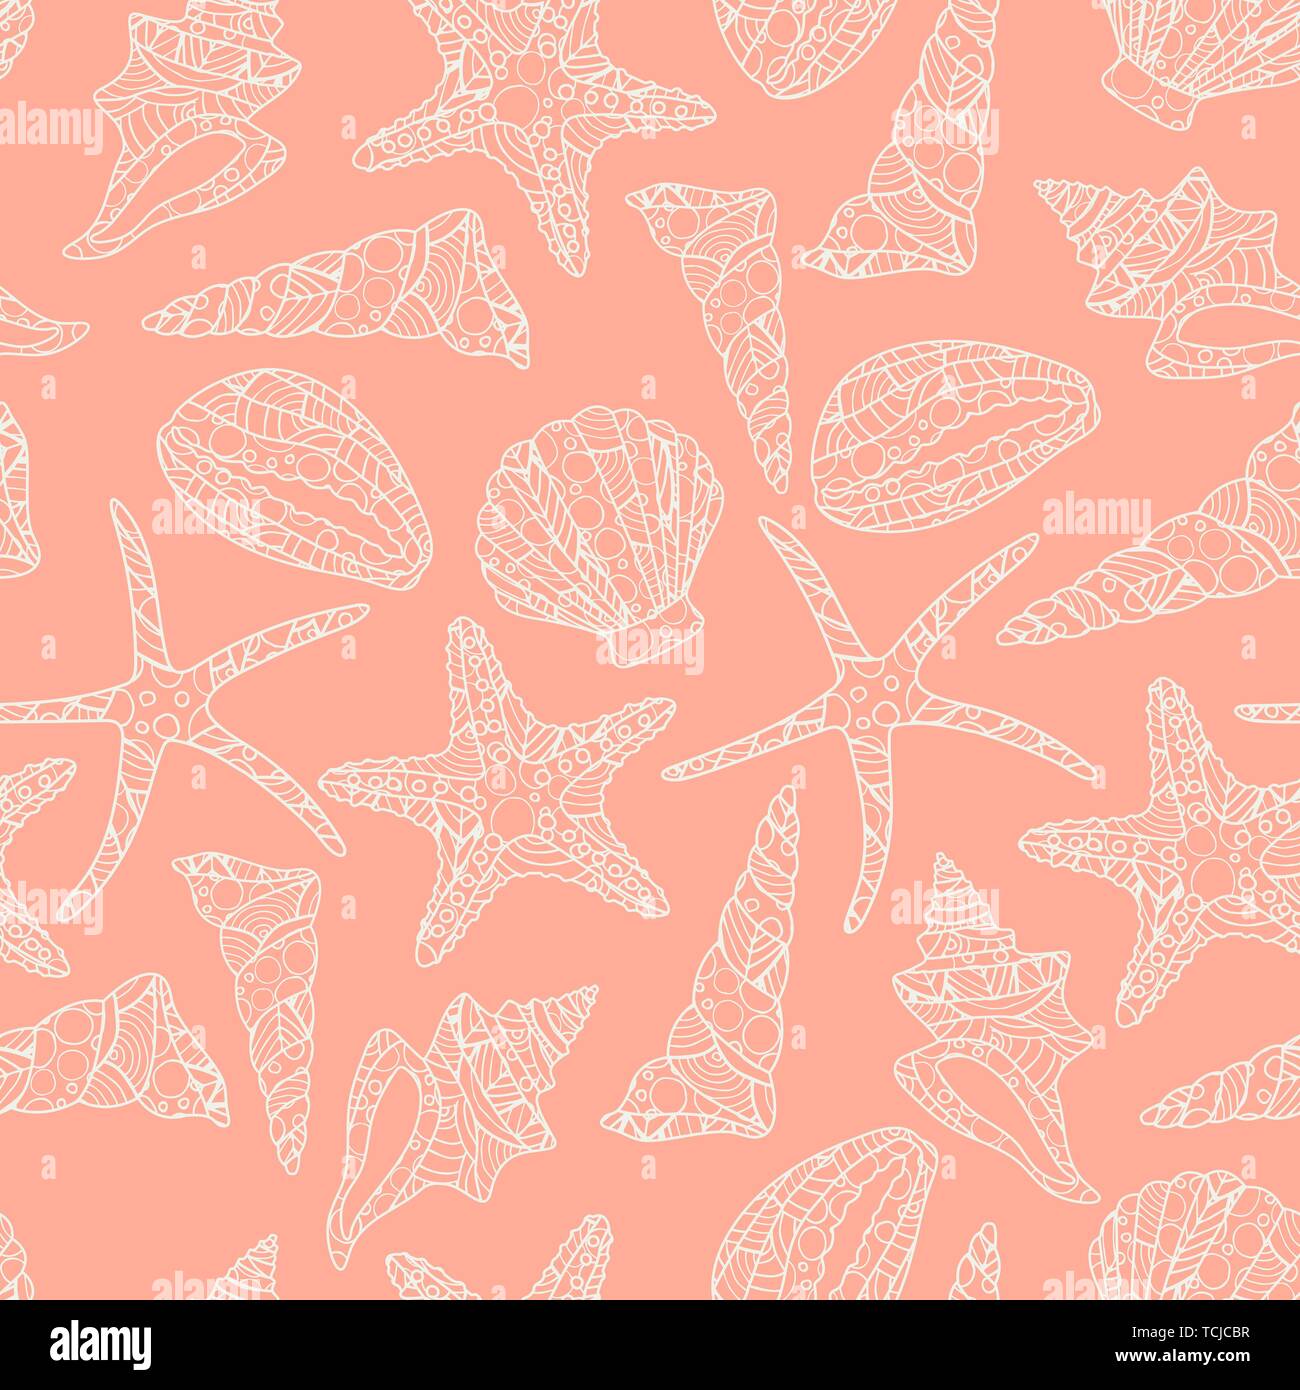 Seamless pattern in arte zen stile con conch conchiglie e stelle marine su sfondo rosa. stock illustrazione vettoriale. in bianco e nero monocromatico Illustrazione Vettoriale